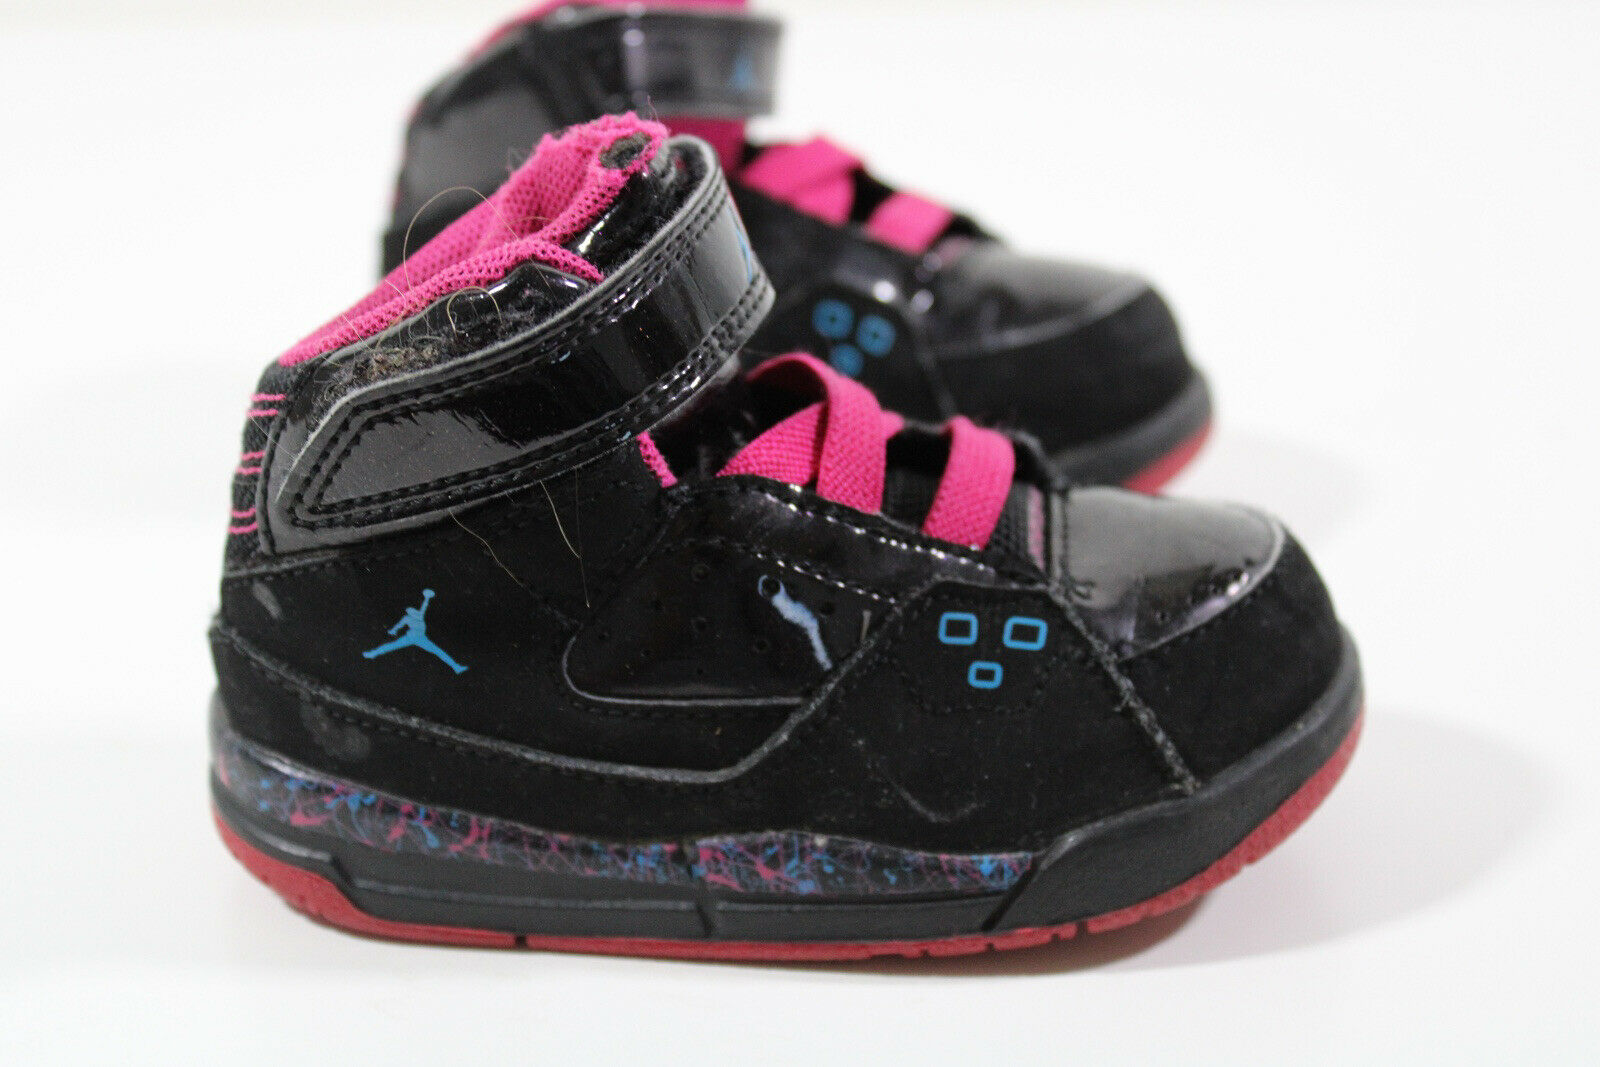 Nike Girls Air Jordan SC-1 407496-009 Black Pink Athletic Shoes Size US 6 C